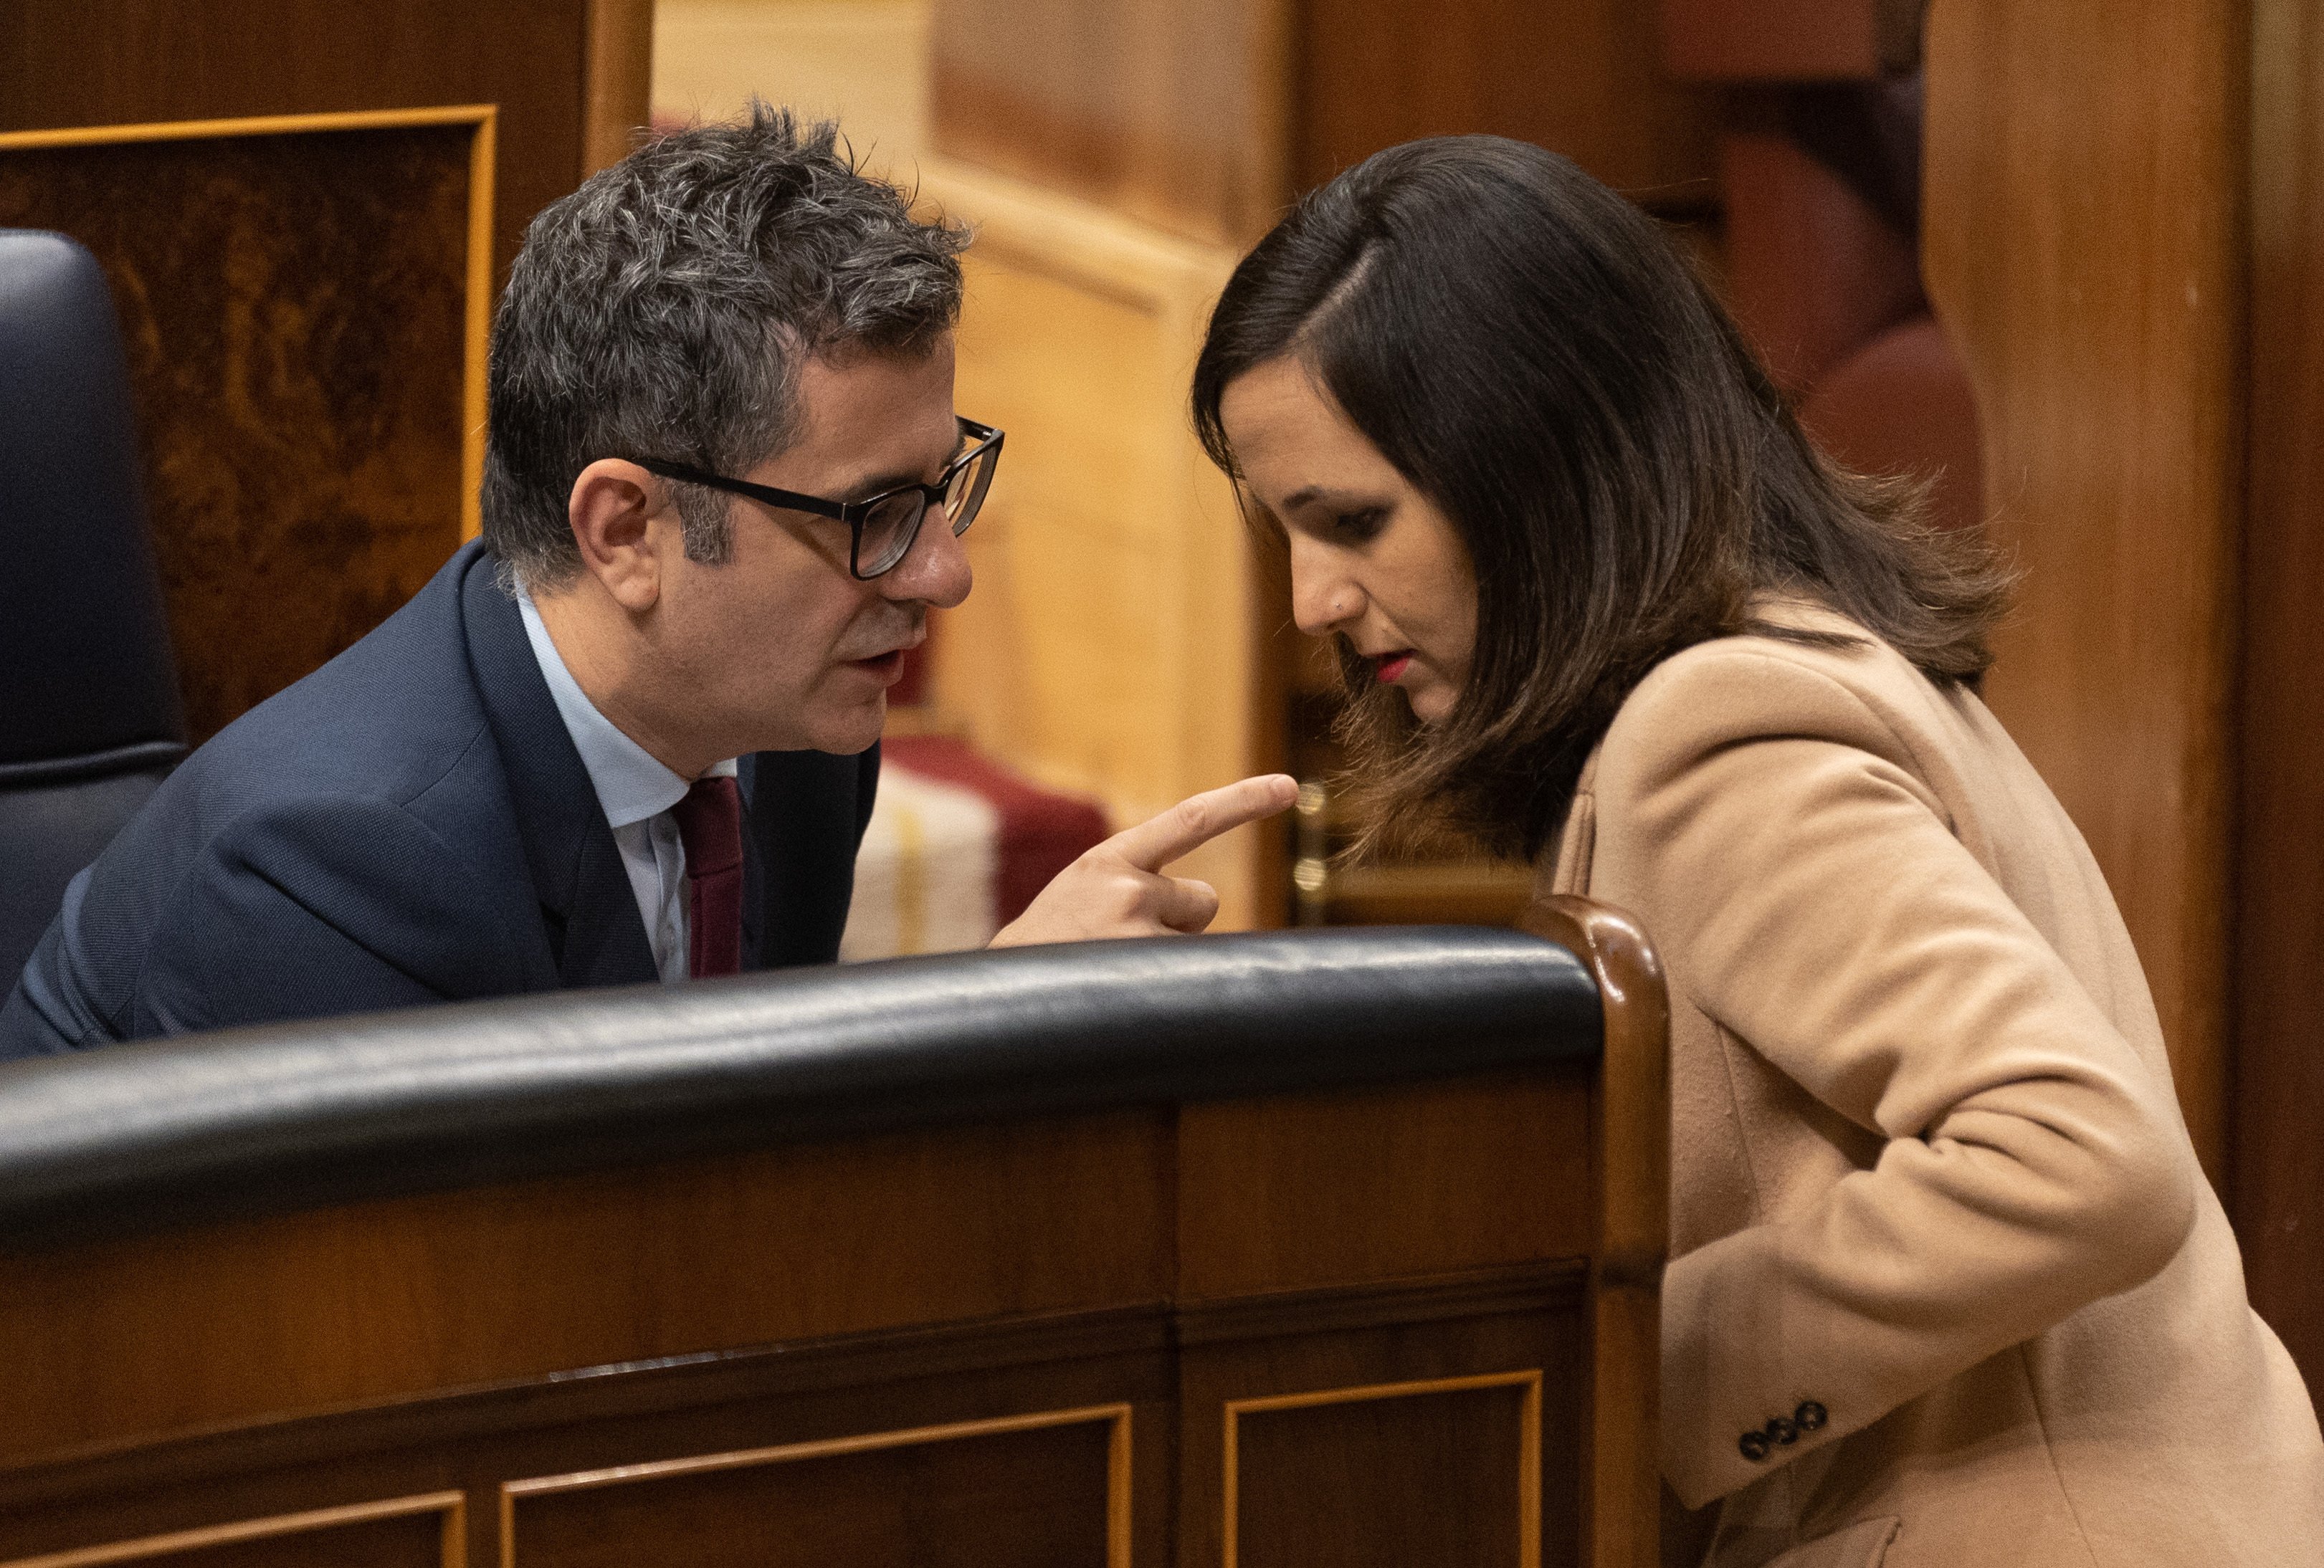 La mala salut de ferro del govern espanyol: una coalició de crisis constants